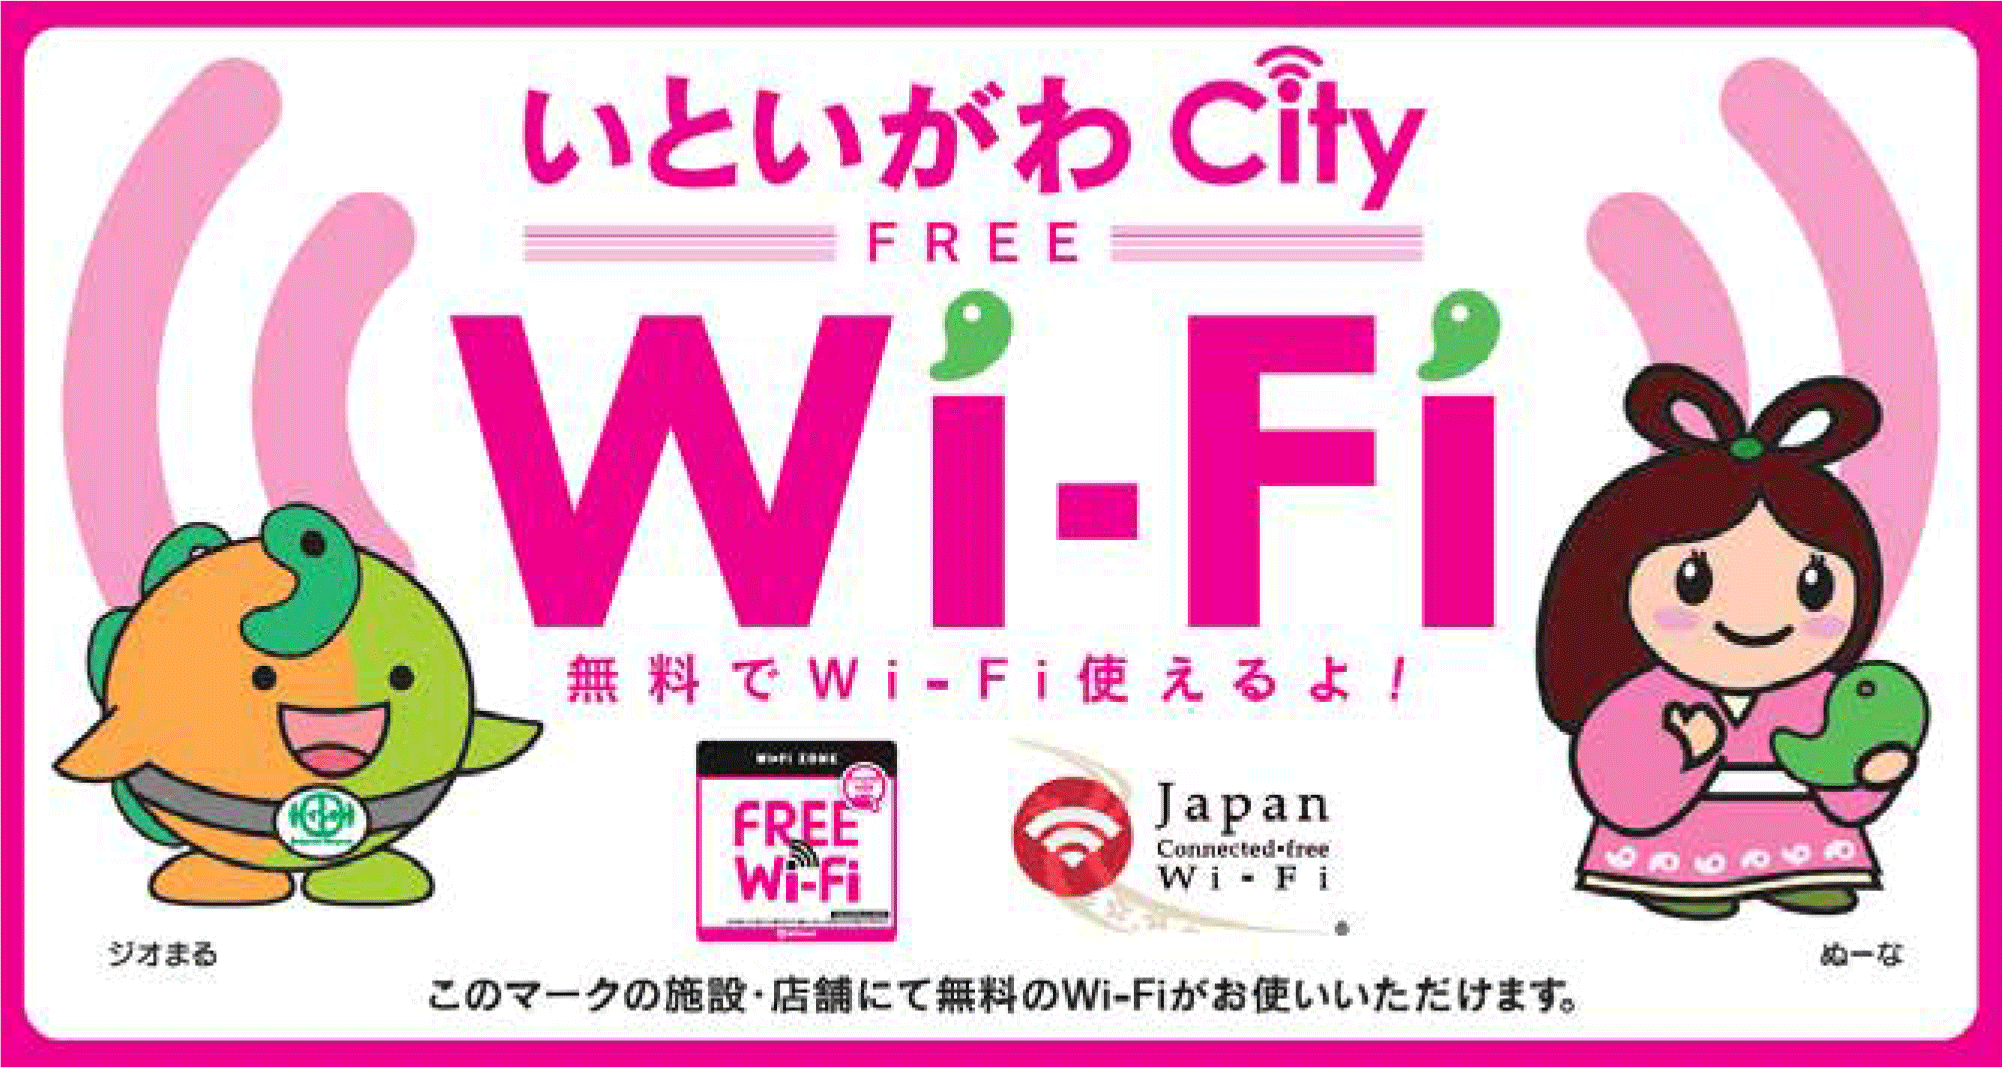 Free WiFI